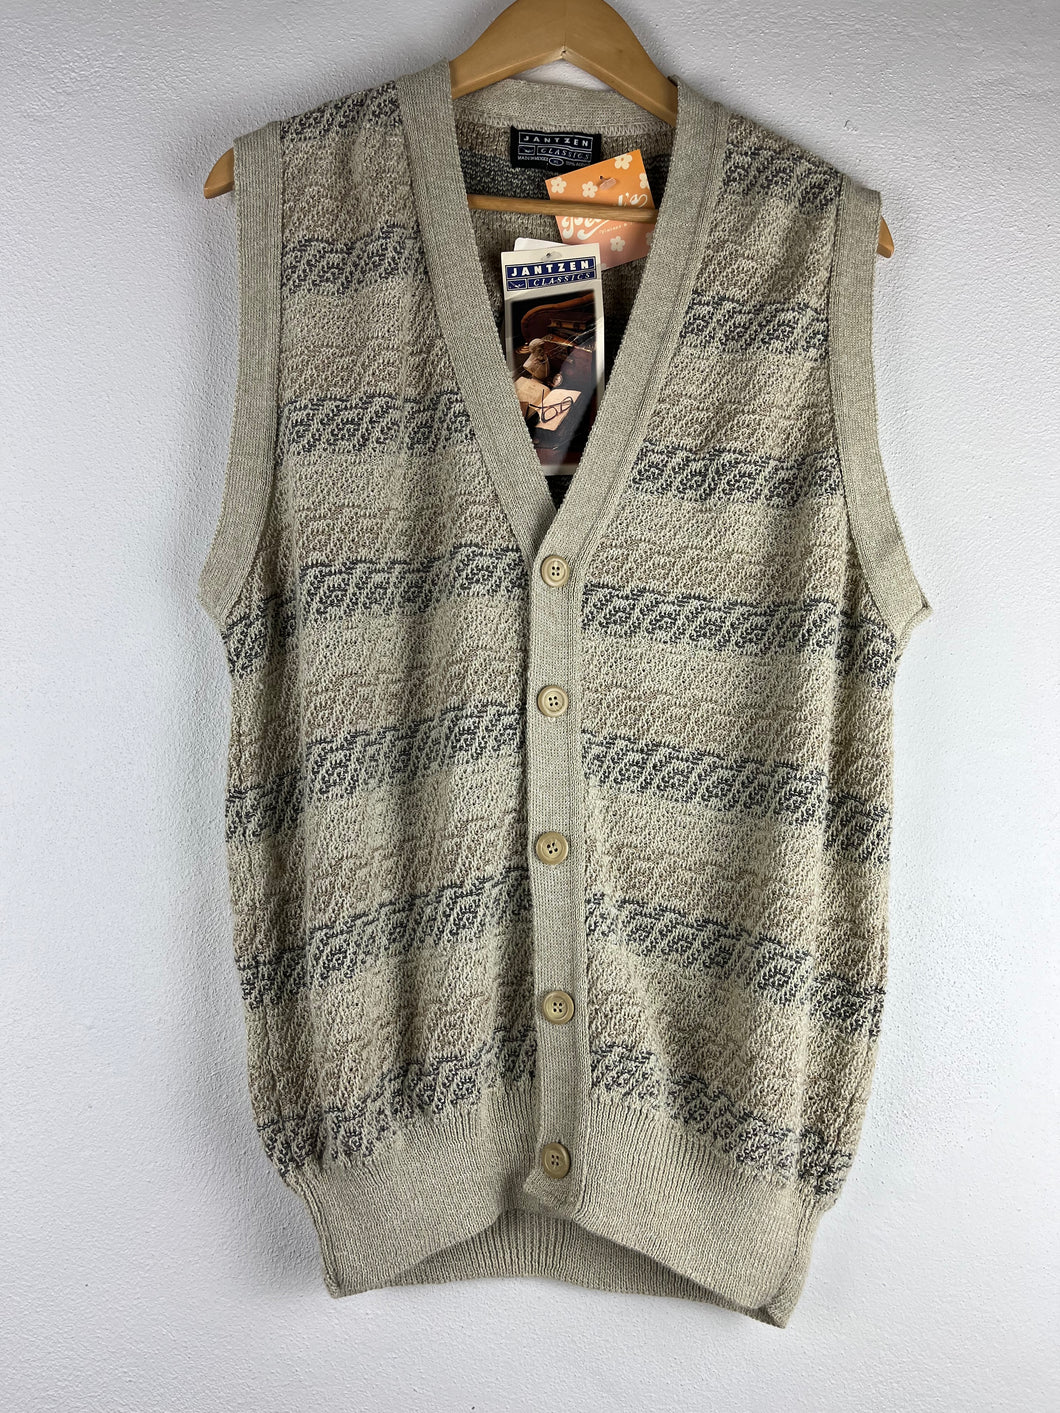 Jantzen Knit Sweater Vest - XLarge